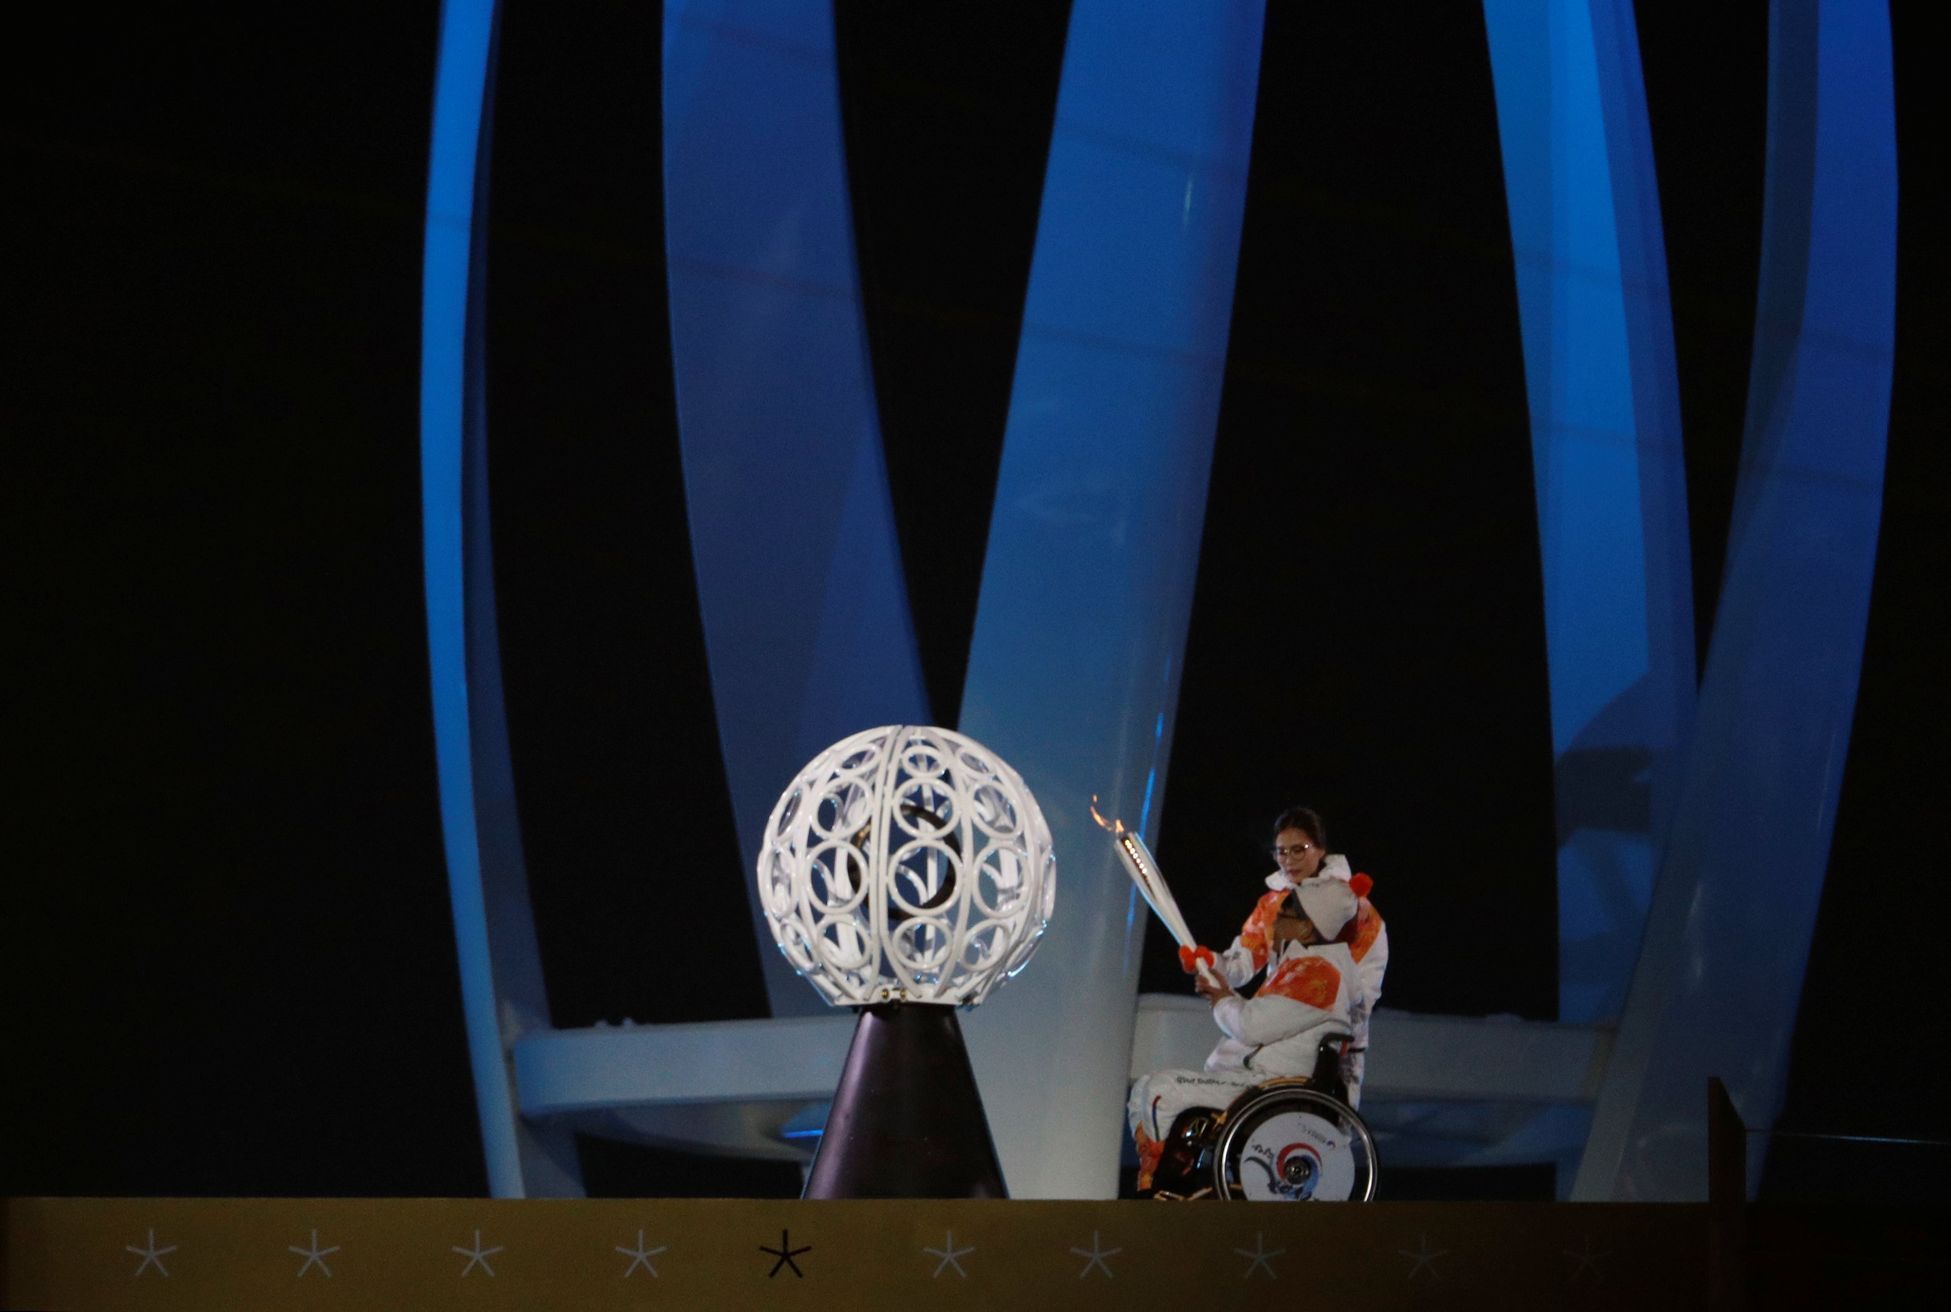 Zahájení paralympiády 2018 v Pchjongčchangu